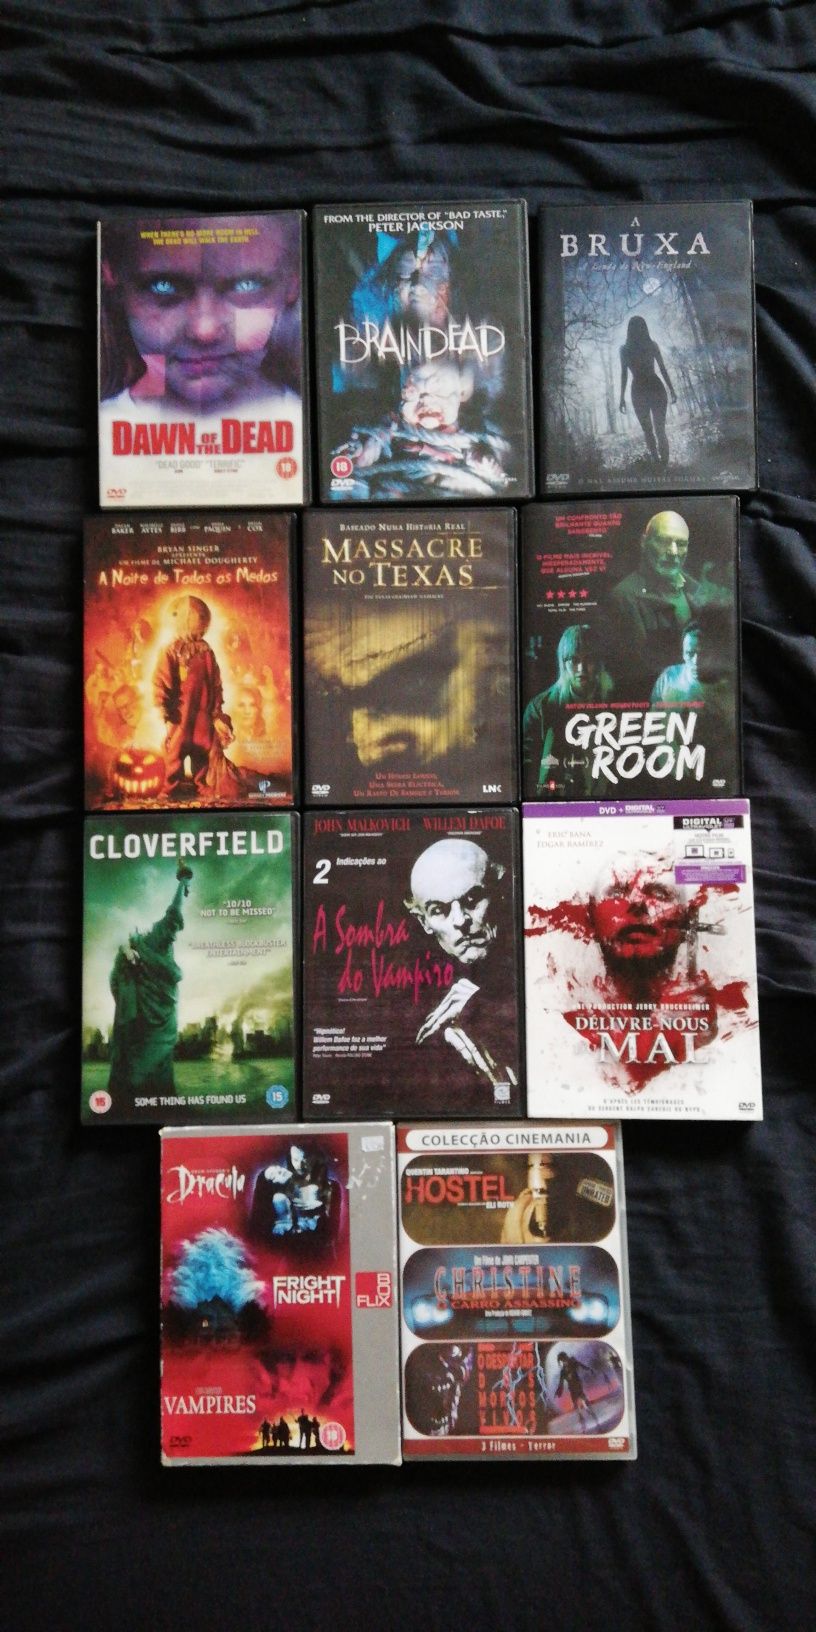 Grandes filmes de Terror, packs, dvds e Blu ray (portes grátis)